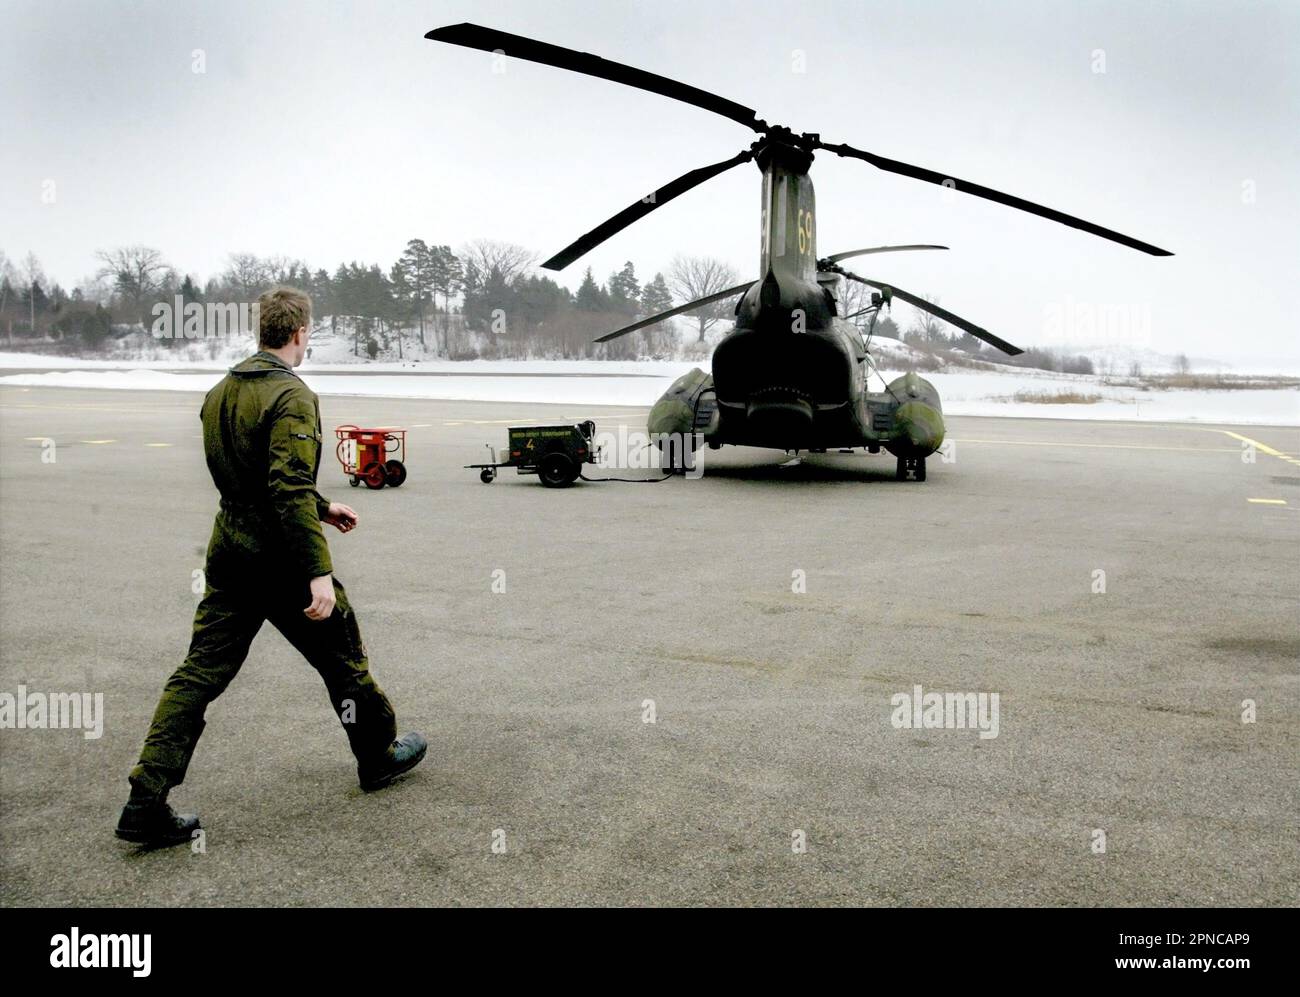 Helikopter 4 der schwedischen Luftwaffe, HKP 4, vom Helikopter-Bataillon, Marinestützpunkt Berga. HKP 4 wurde bei der U-Boot-Jagd und bei Rettungsmissionen wie der Estonia-Katastrophe eingesetzt. Auf dem Bild: Die Crew vor dem Hubschrauber vor der Mission. Stockfoto